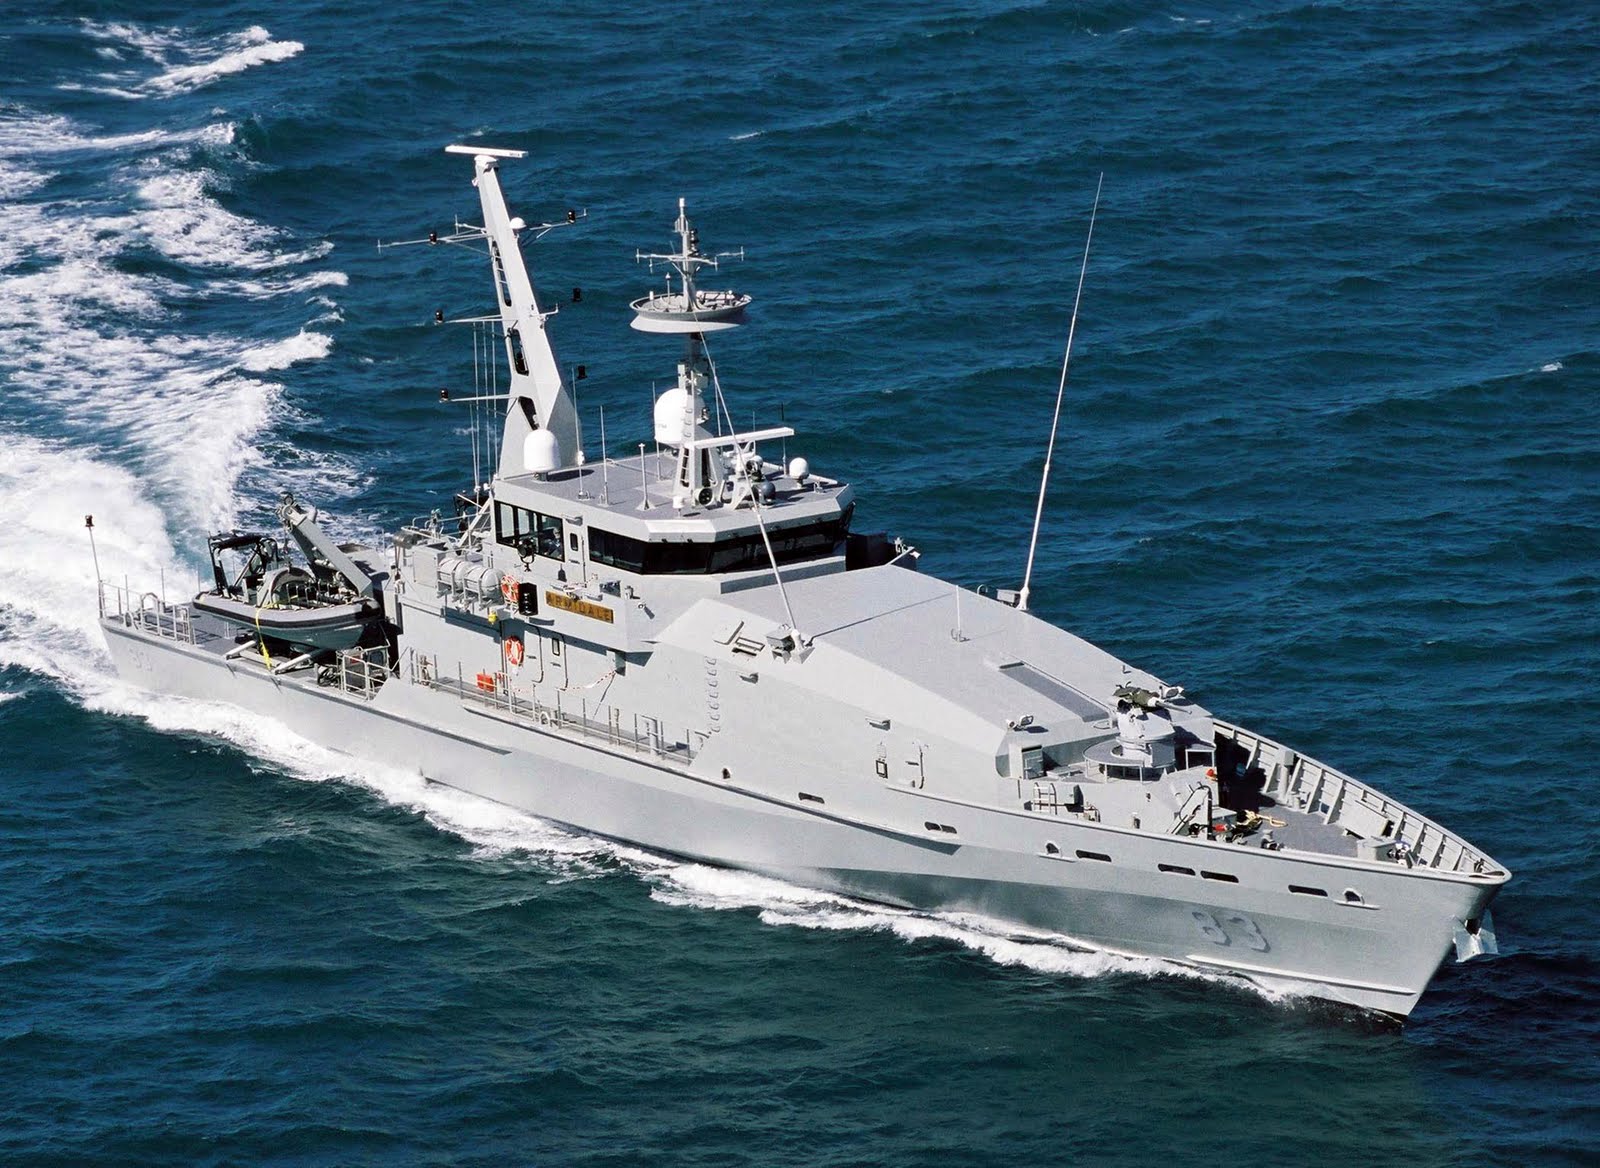 HMAS Larrakia (ACPB 84) Backgrounds, Compatible - PC, Mobile, Gadgets| 1600x1168 px